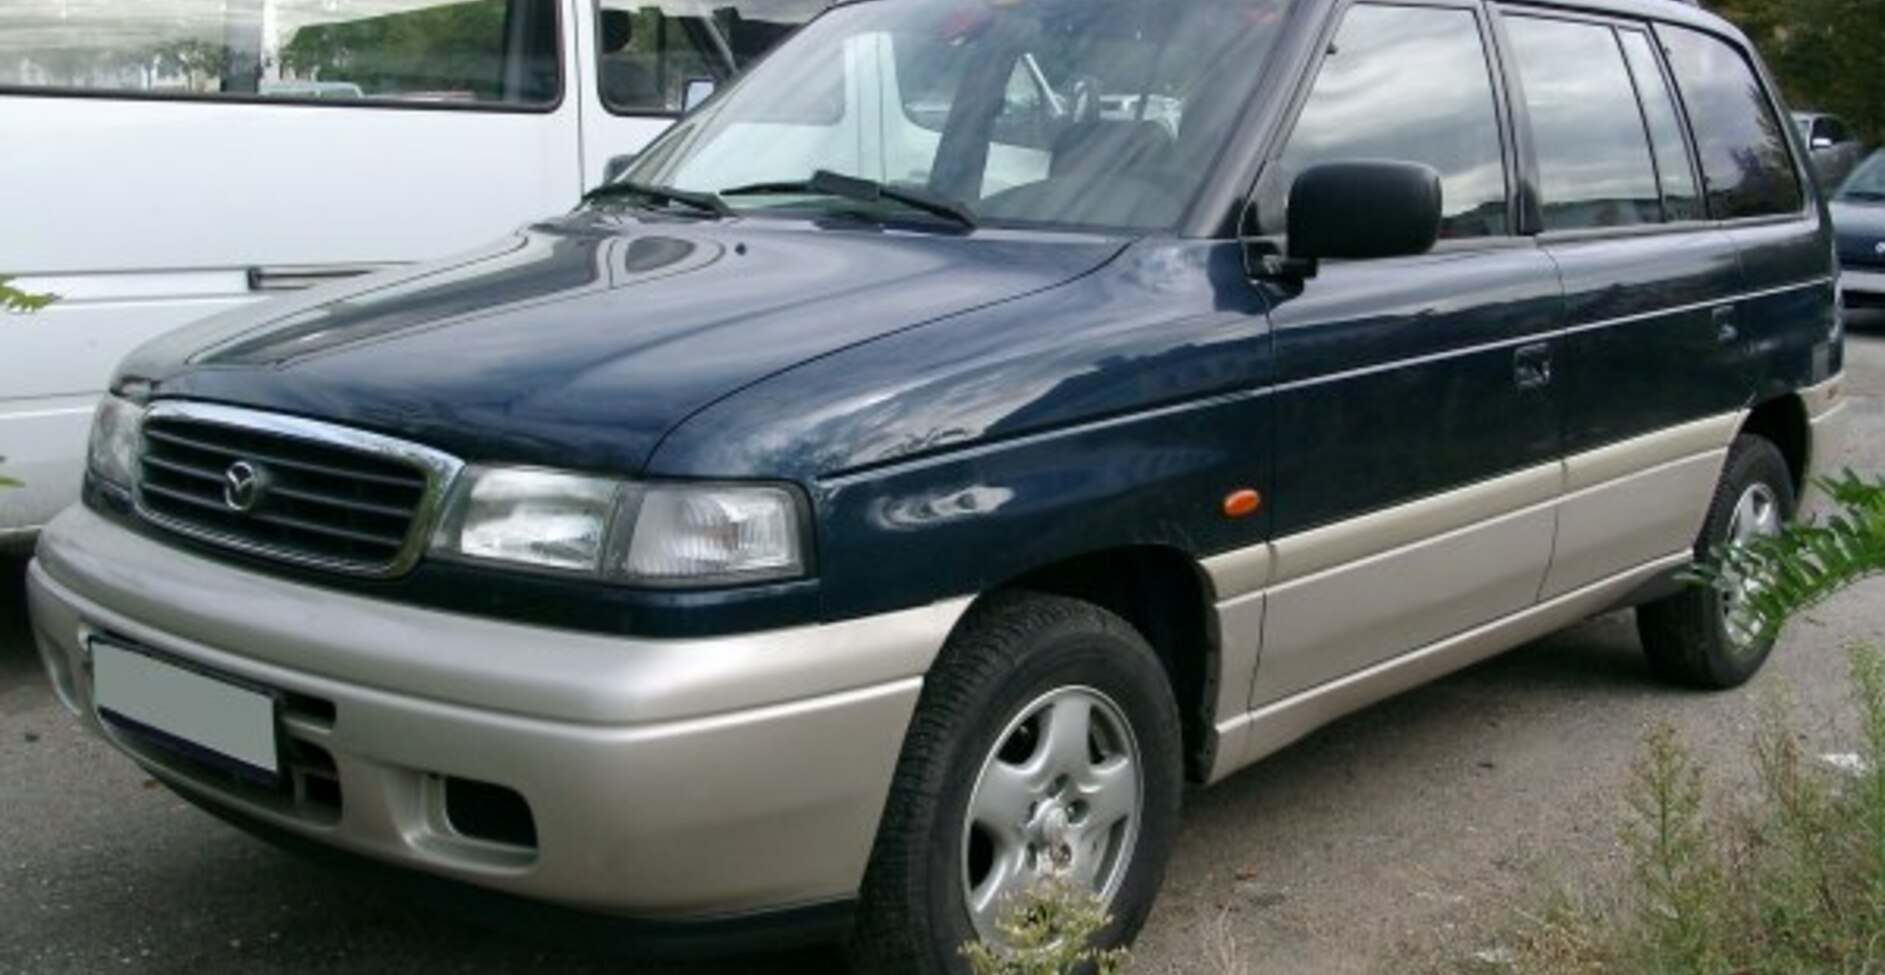 Mazda MPV I (LV) 3.0 i V6 (154 Hp) 1990, 1991, 1992, 1993, 1994, 1995, 1996, 1997, 1998, 1999 